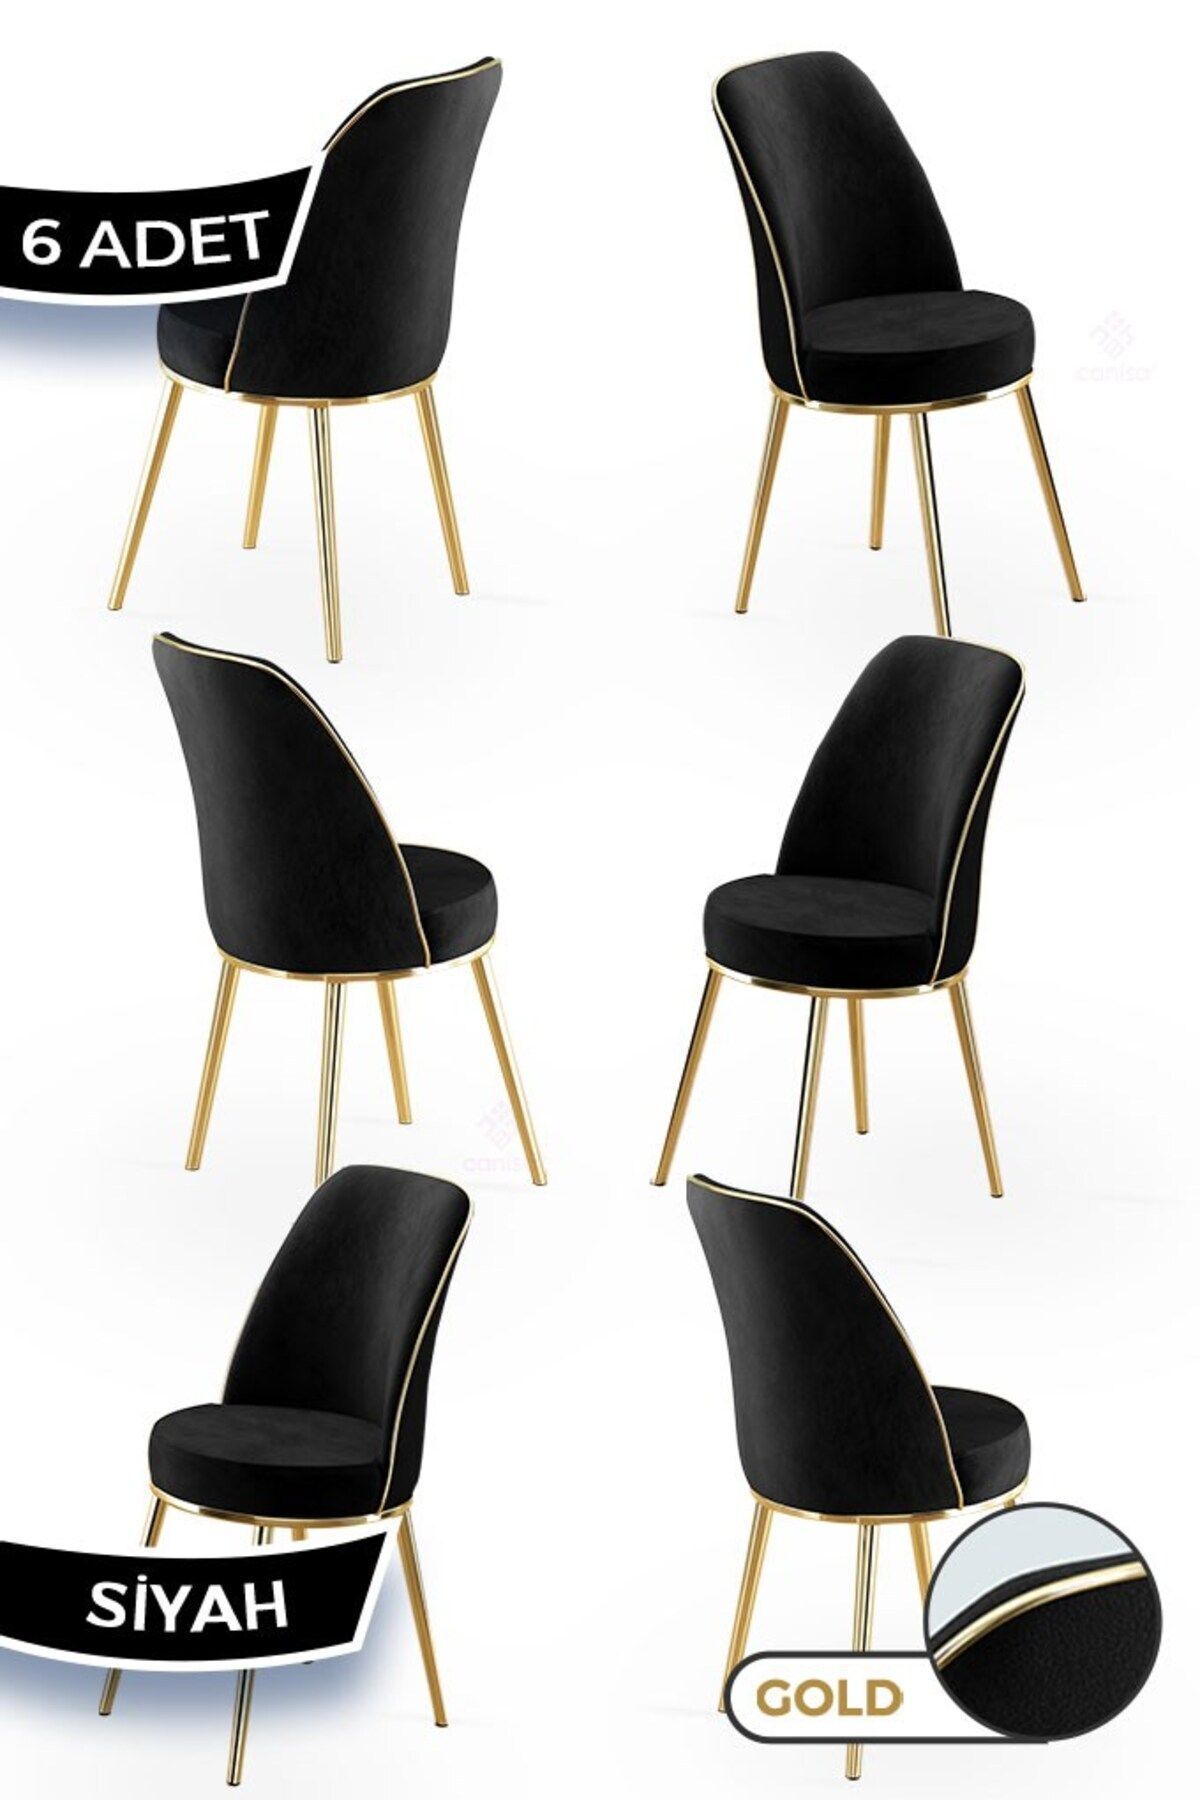 Canisa Pefa Serisi 6 Adet Mutfak Sandalyesi Gold Kaplama Metal Ayak 1. Sınıf Babyface Kumaş